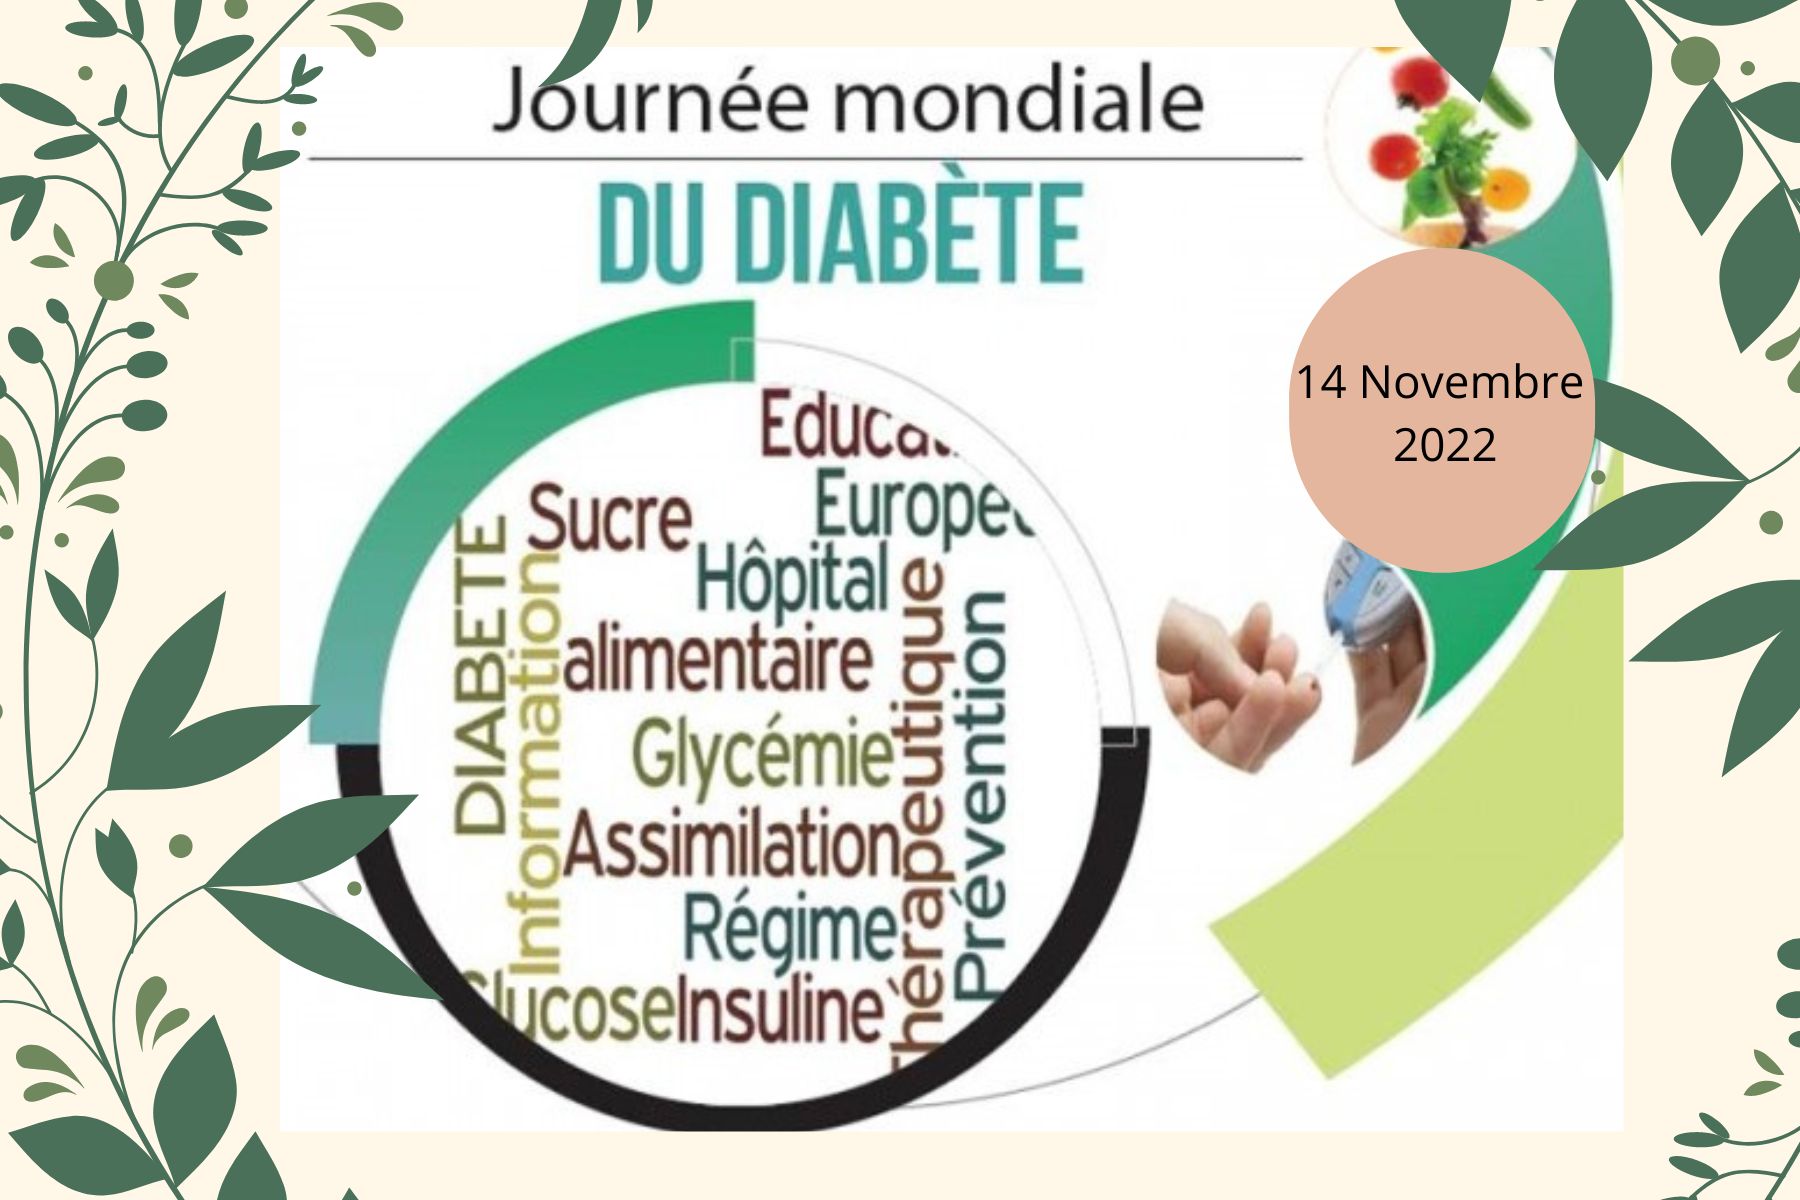 Journée Mondiale du diabète le 14 novembre 2022 avec son logo et ses différentes prise en charge